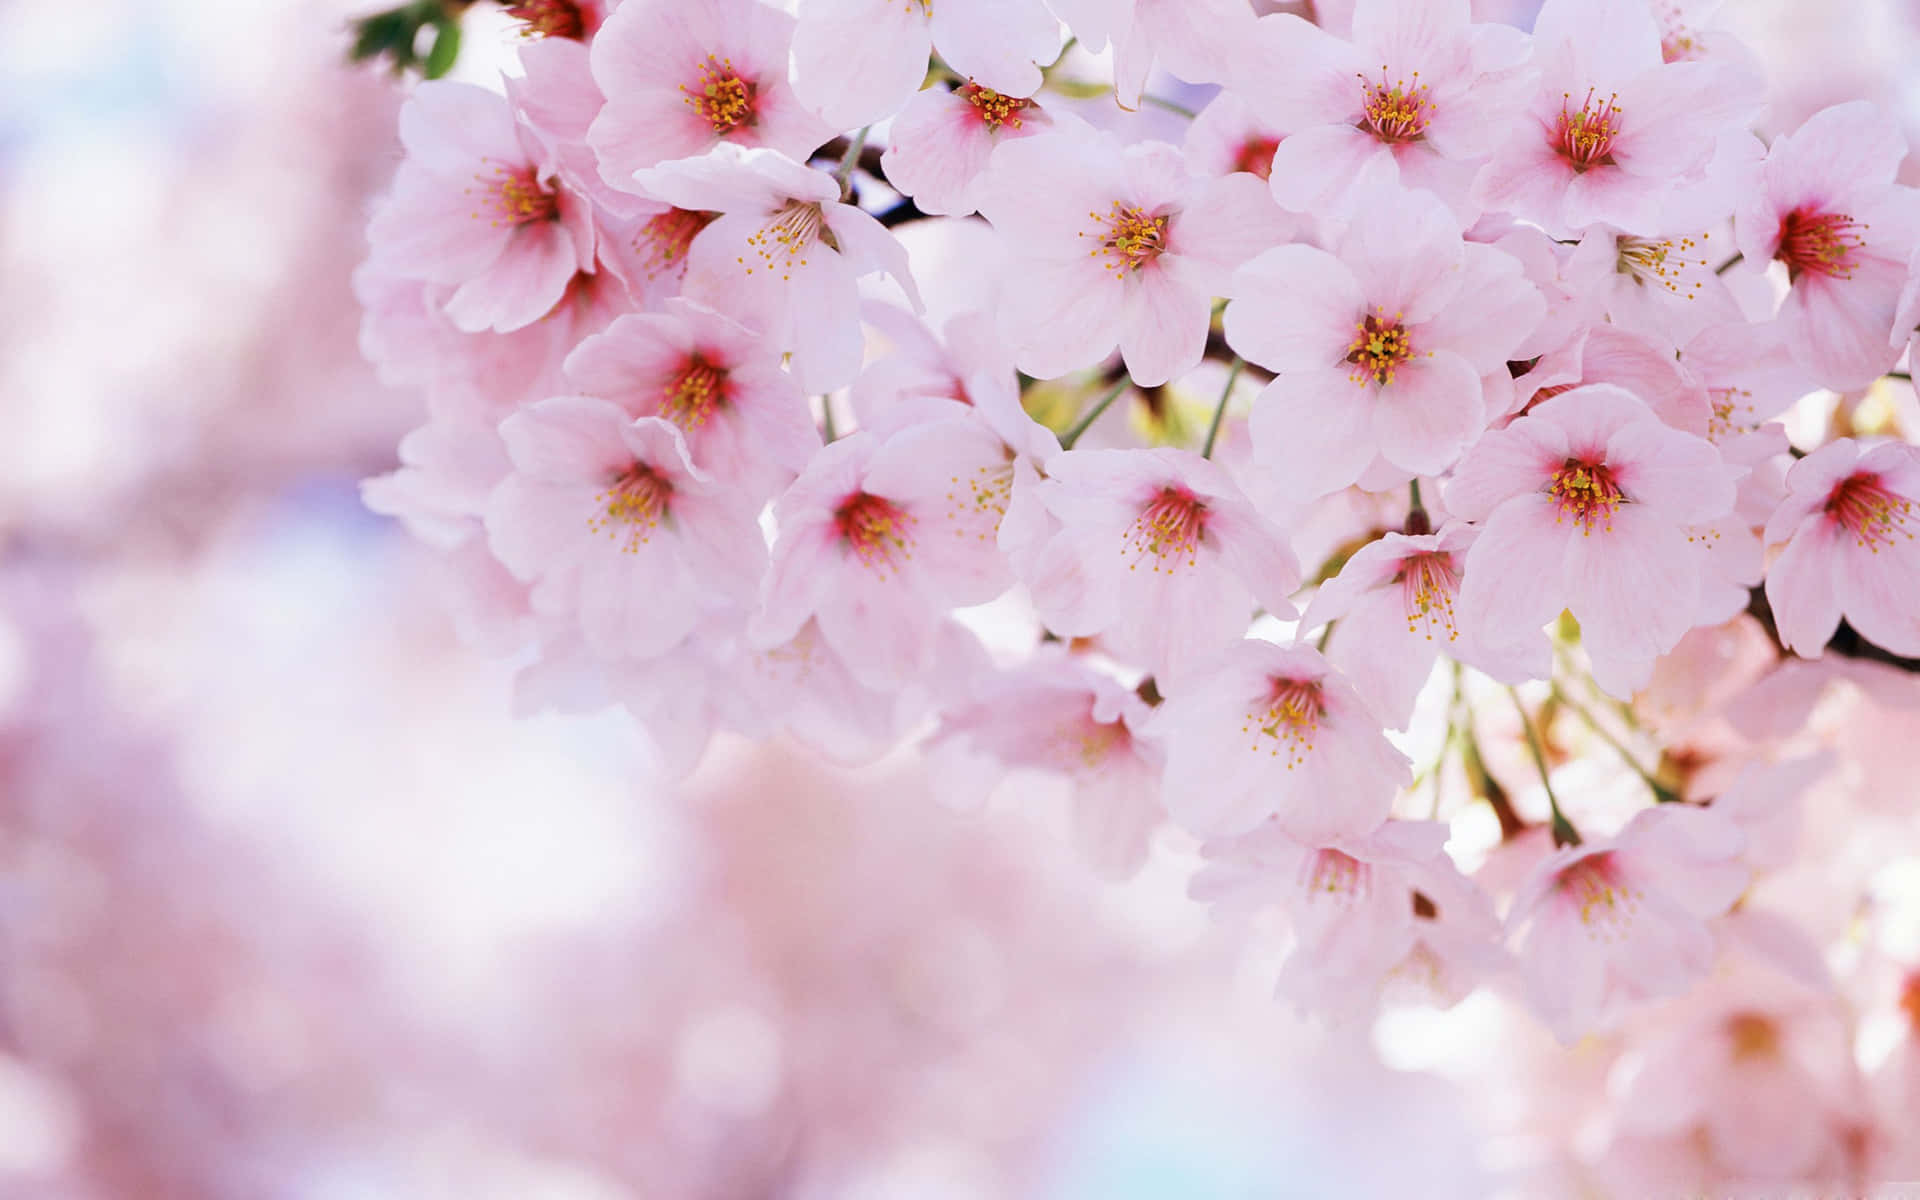 Descarganuestro Exclusivo Fondo De Pantalla De Sakura Para Pc Para Darle Un Toque Hermoso Y Vibrante A Tu Escritorio. Fondo de pantalla